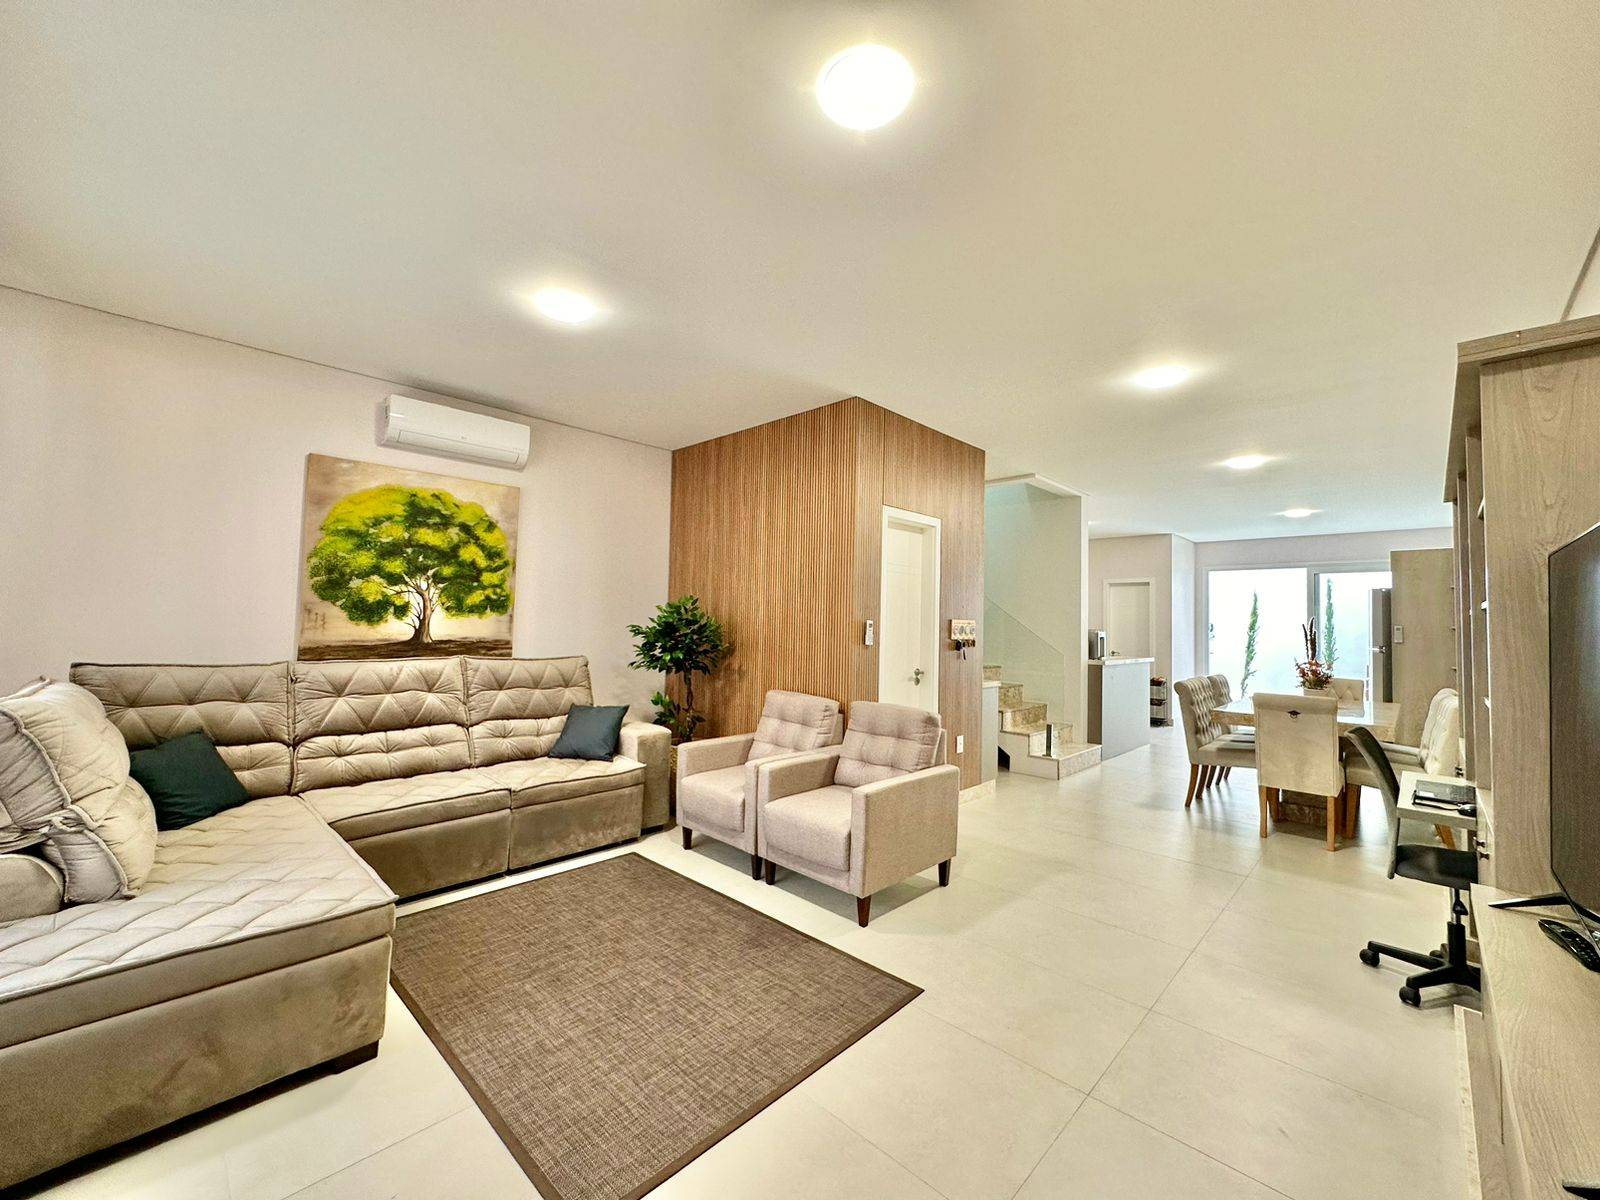 Casa em Condomínio 4 dormitórios para venda, Condomínio Murano - Zona Nova em Capão da Canoa | Ref.: 7630